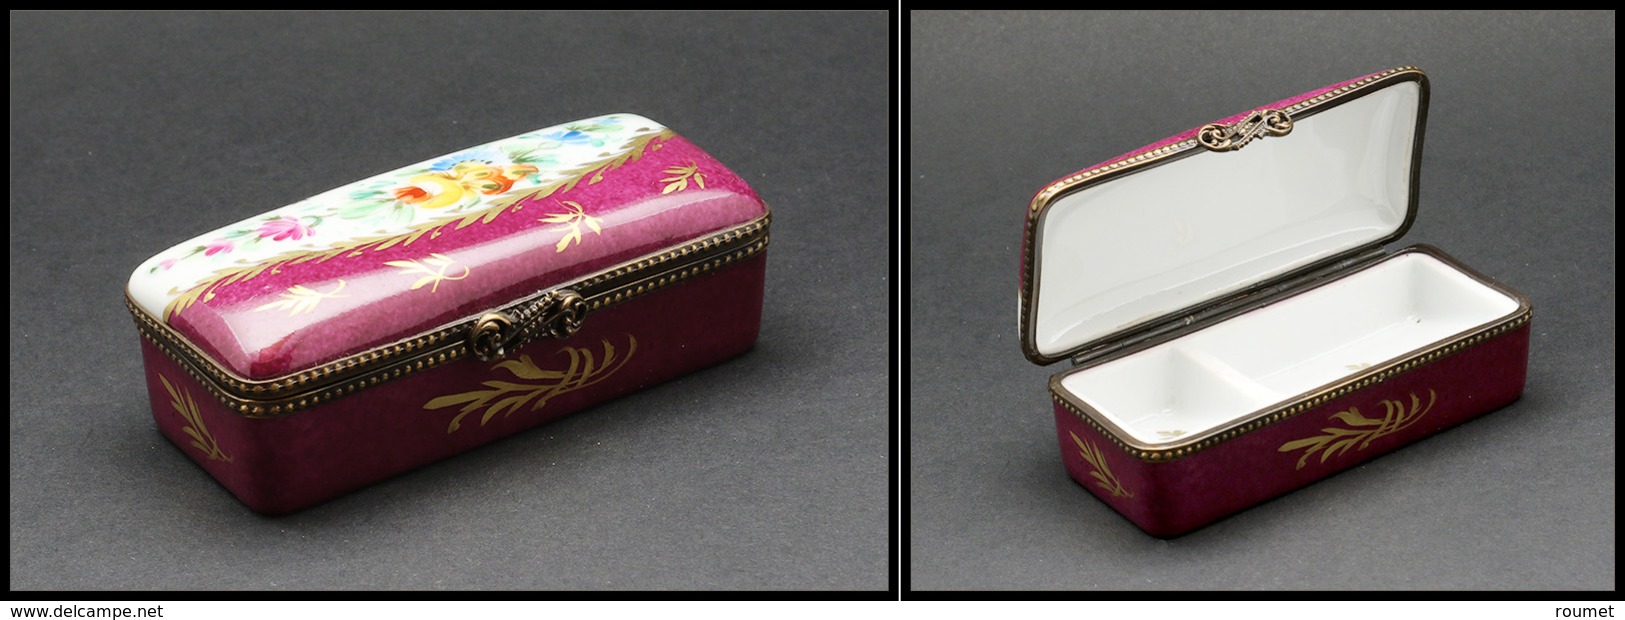 Boîte En Porcelaine De Limoges à Décor De Fleurs, Cerclage Bronze, Dominante Bordeaux, Peint Main, 2 Comp., 85x35x25mm.  - Stamp Boxes